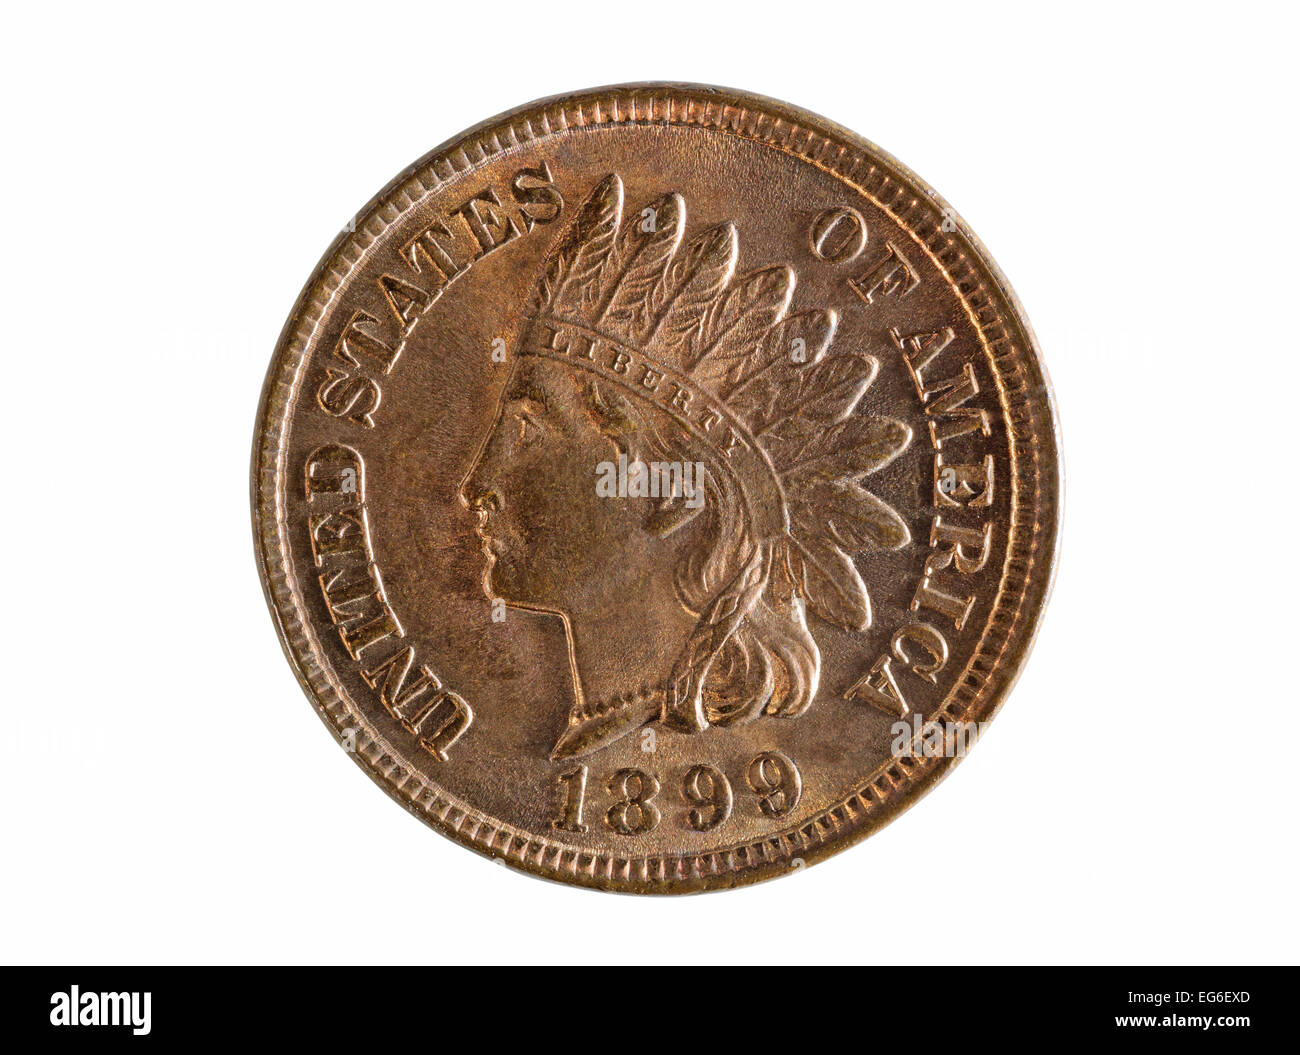 Vereinigte Staaten von Amerika Indian Head Cent Münze isoliert auf weißem Hintergrund. Münze ist Grade Zustand neuwertig Stockfoto